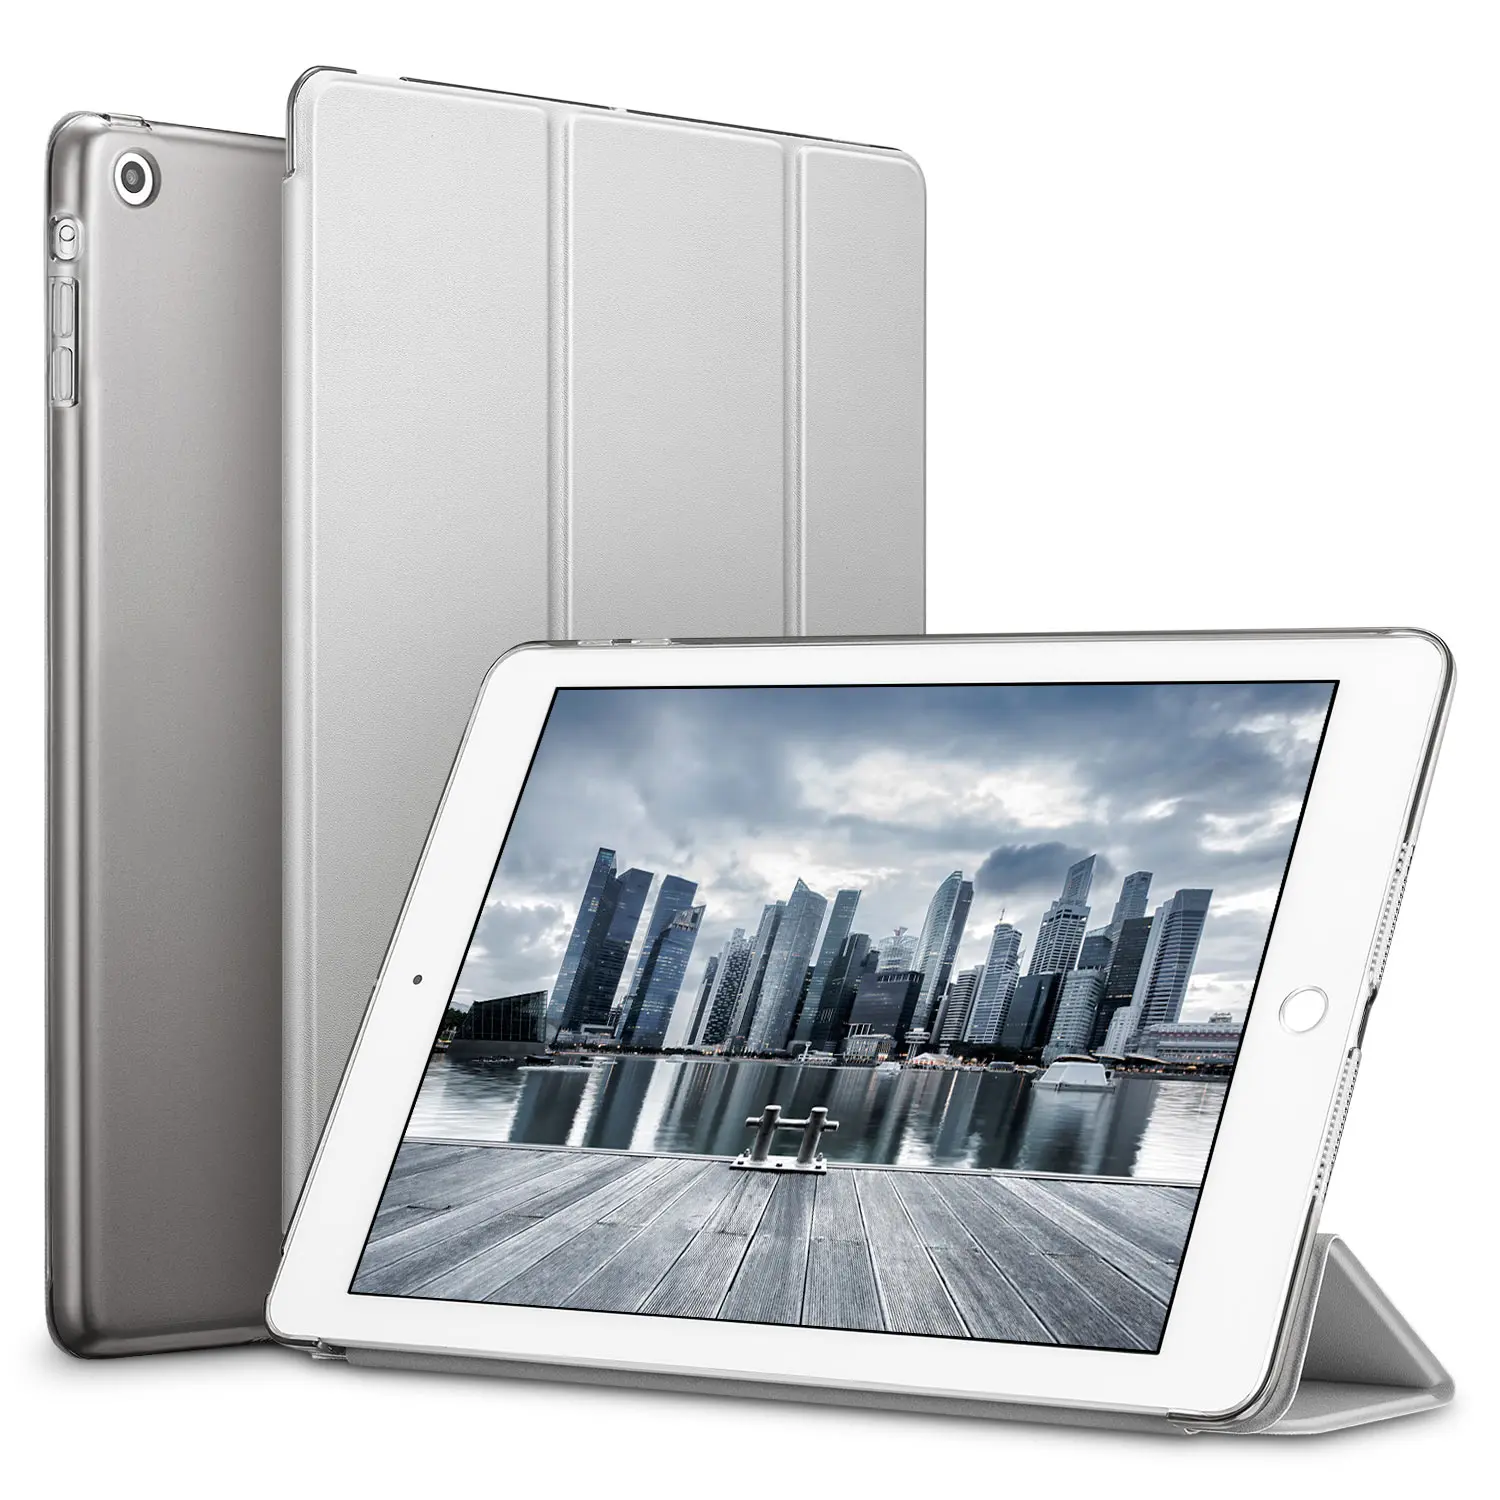 Чехол для iPad Mini 3 2 1, ESR из искусственной кожи, силиконовый мягкий чехол, трехслойная подставка, Авто Режим сна/Пробуждение, умный чехол для iPad Mini 2, чехол